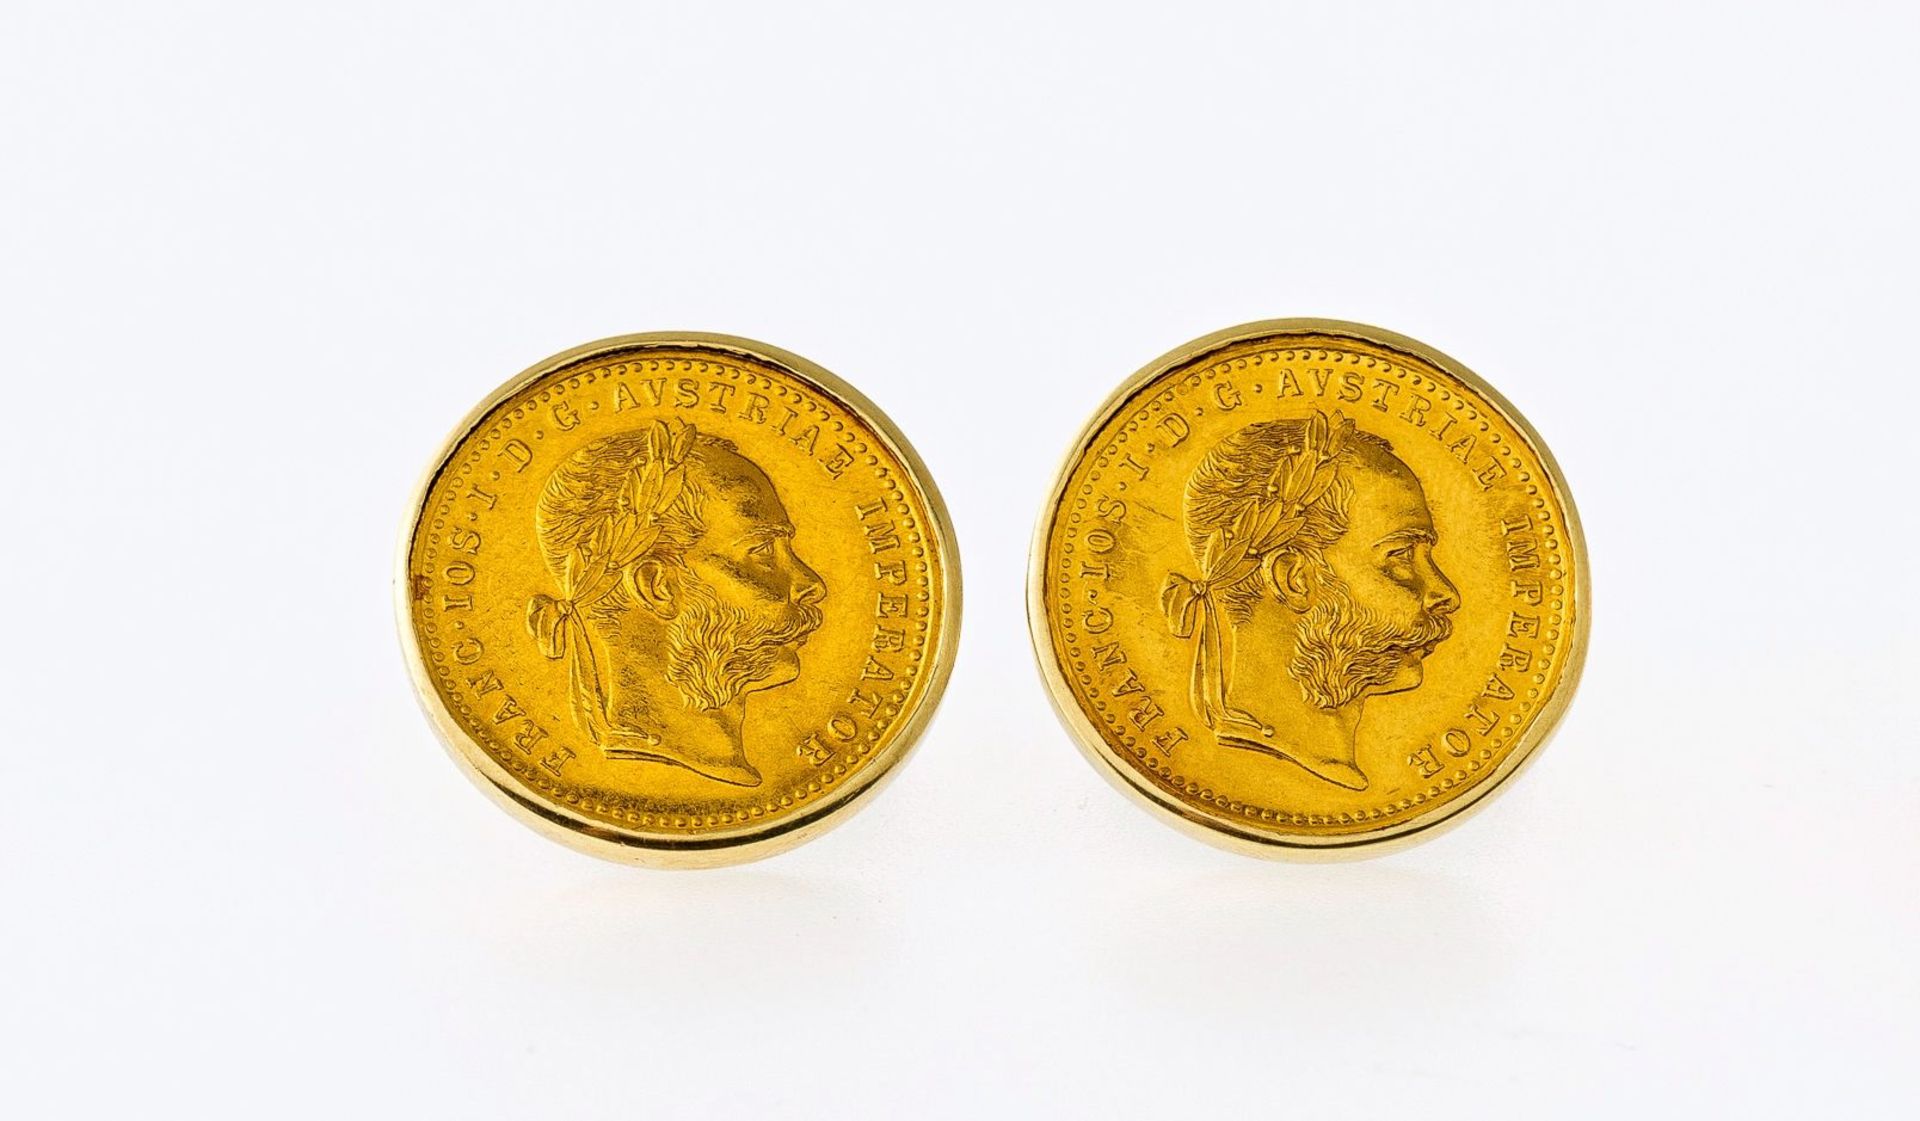 Paar Manschettenknöpfe mit Münzen